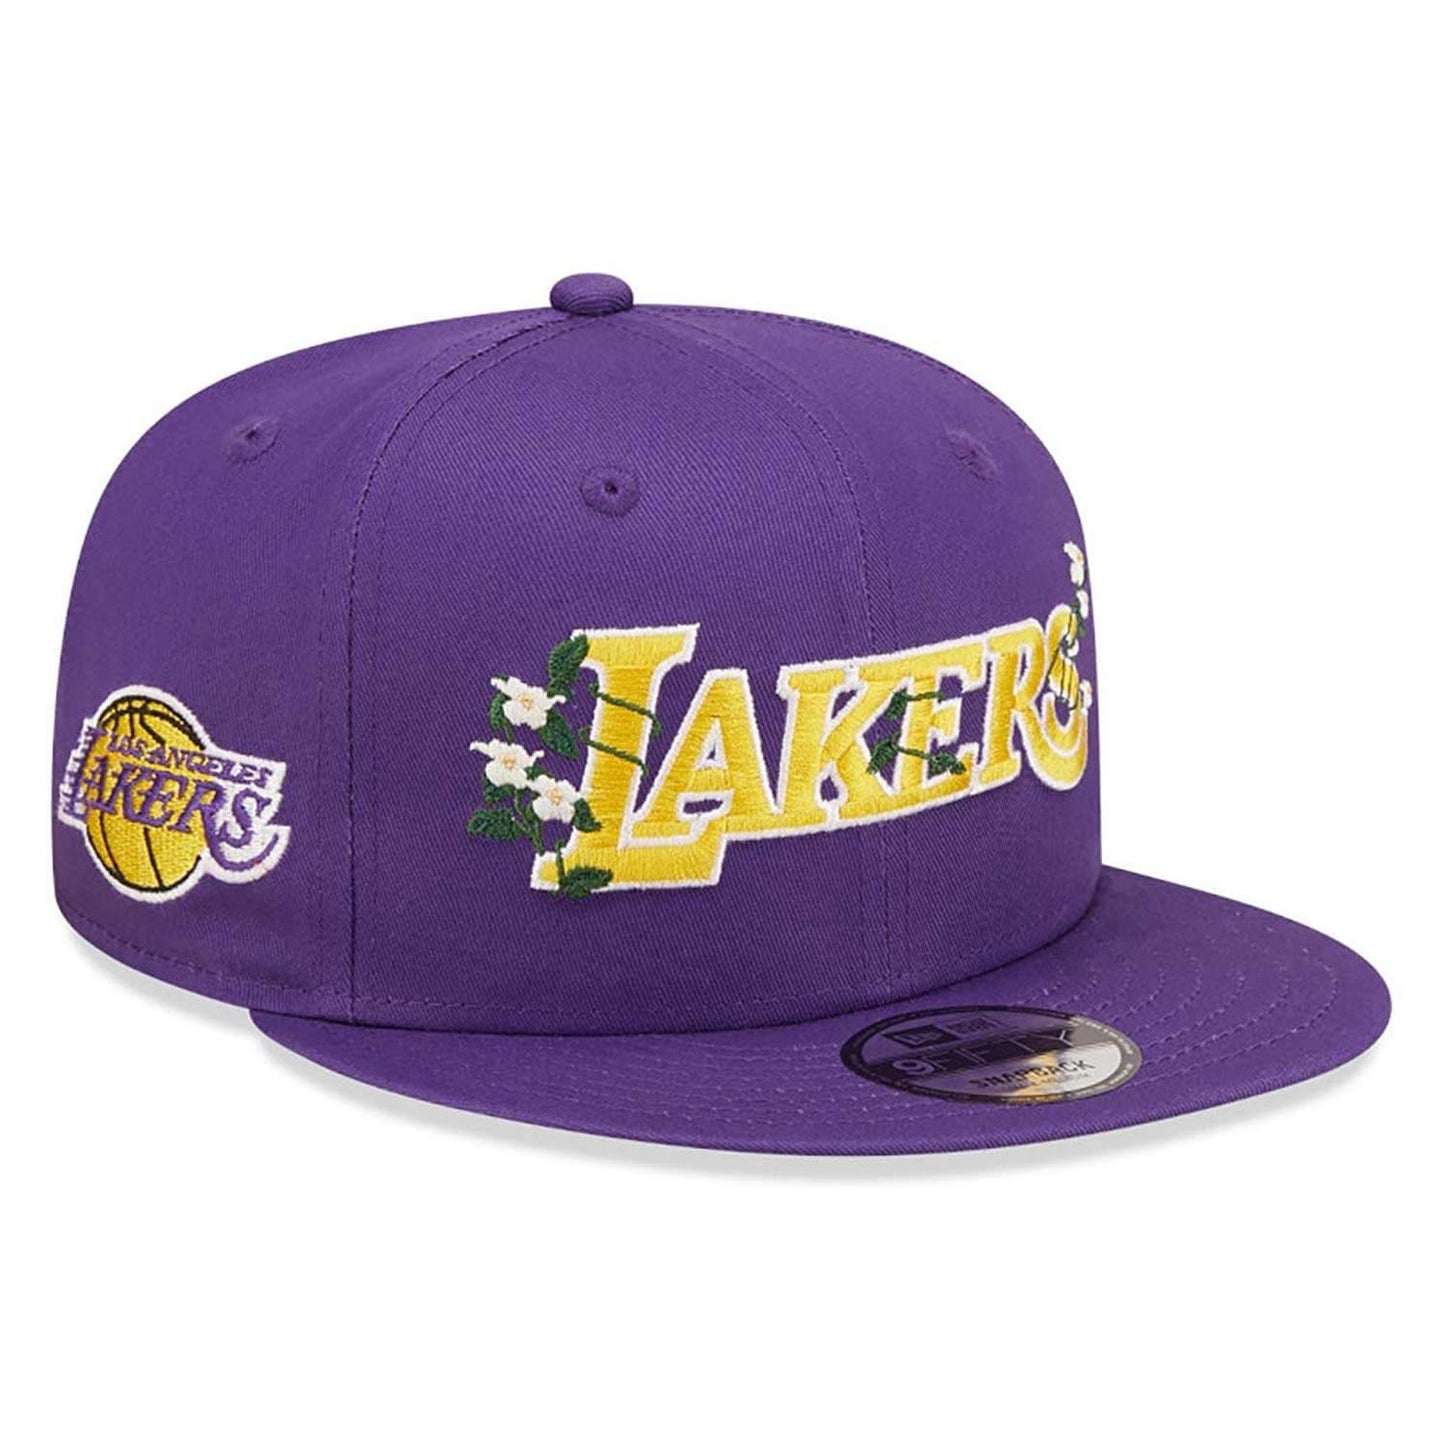 New Era NBA LA Lakers Flower Wordmark Purple 9FIFTY Snapback Cap